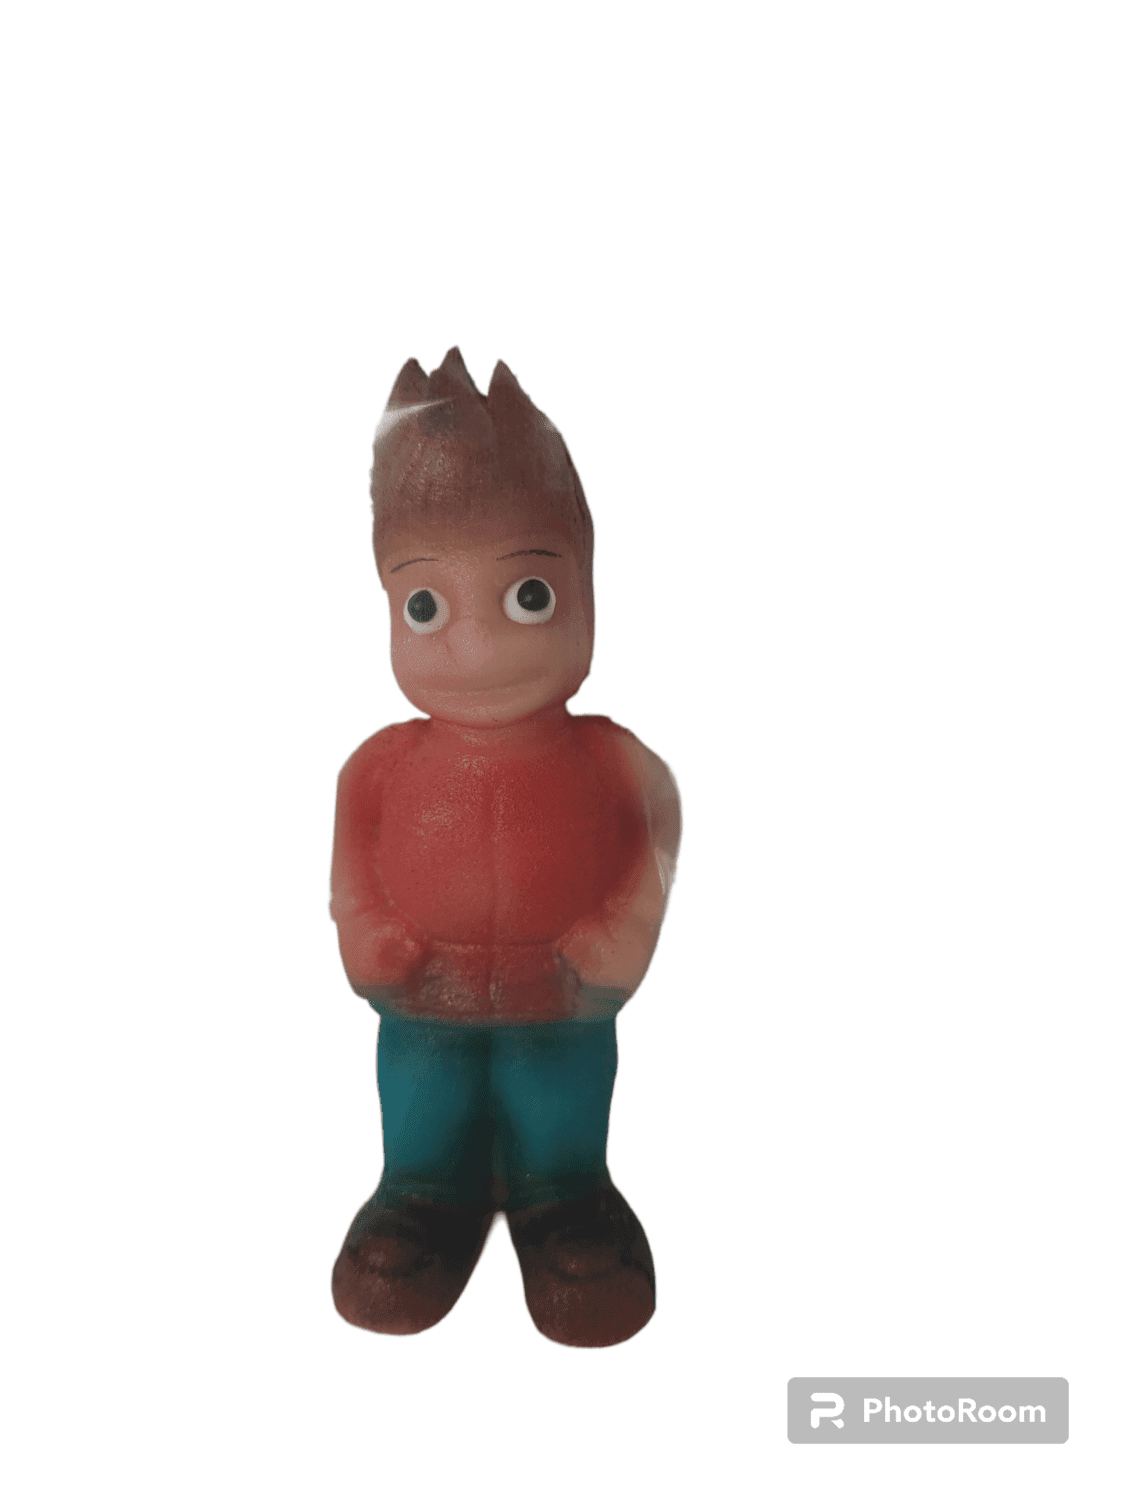 Marcipánová figurka Ríša, 65g - Frischmann vyškov